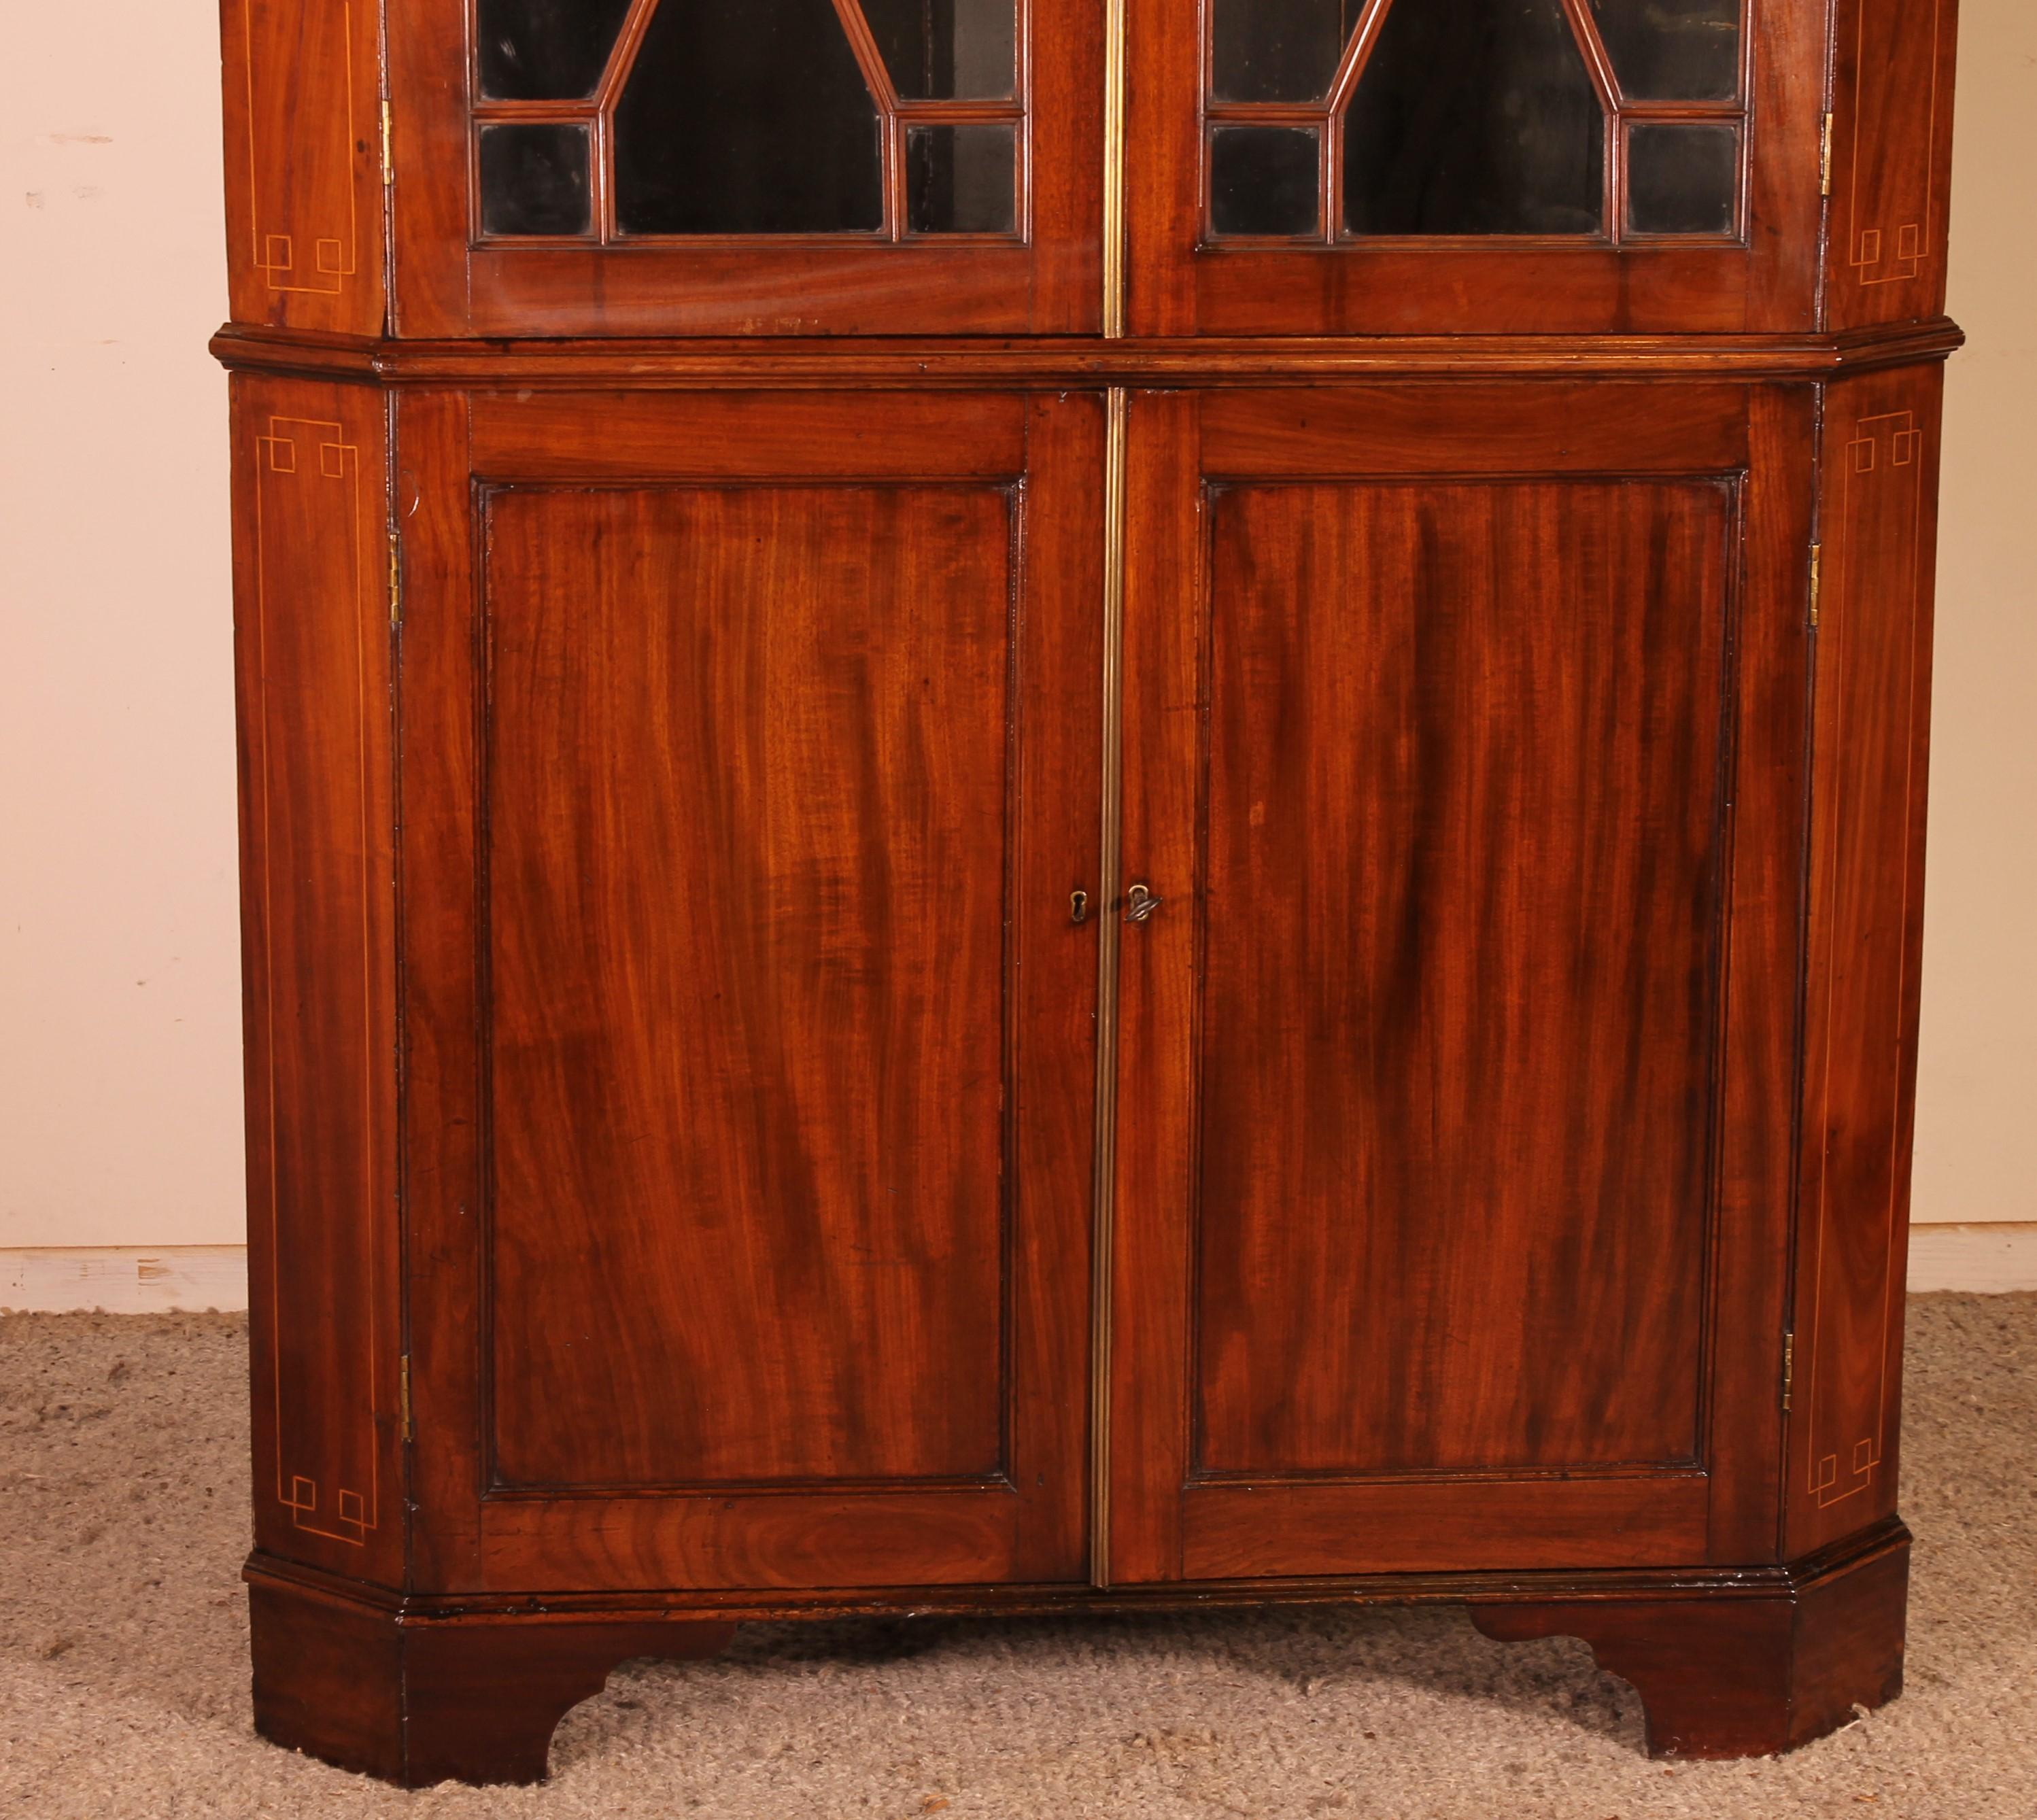 Elegant meuble d'angle en acajou anglais du 18e siècle

Armoire d'angle de très bonne qualité avec fenêtres à croisillons. Ce sont ses fenêtres d'origine qui sont intactes.

Très élégant modèle en deux pièces avec une incrustation de bois de